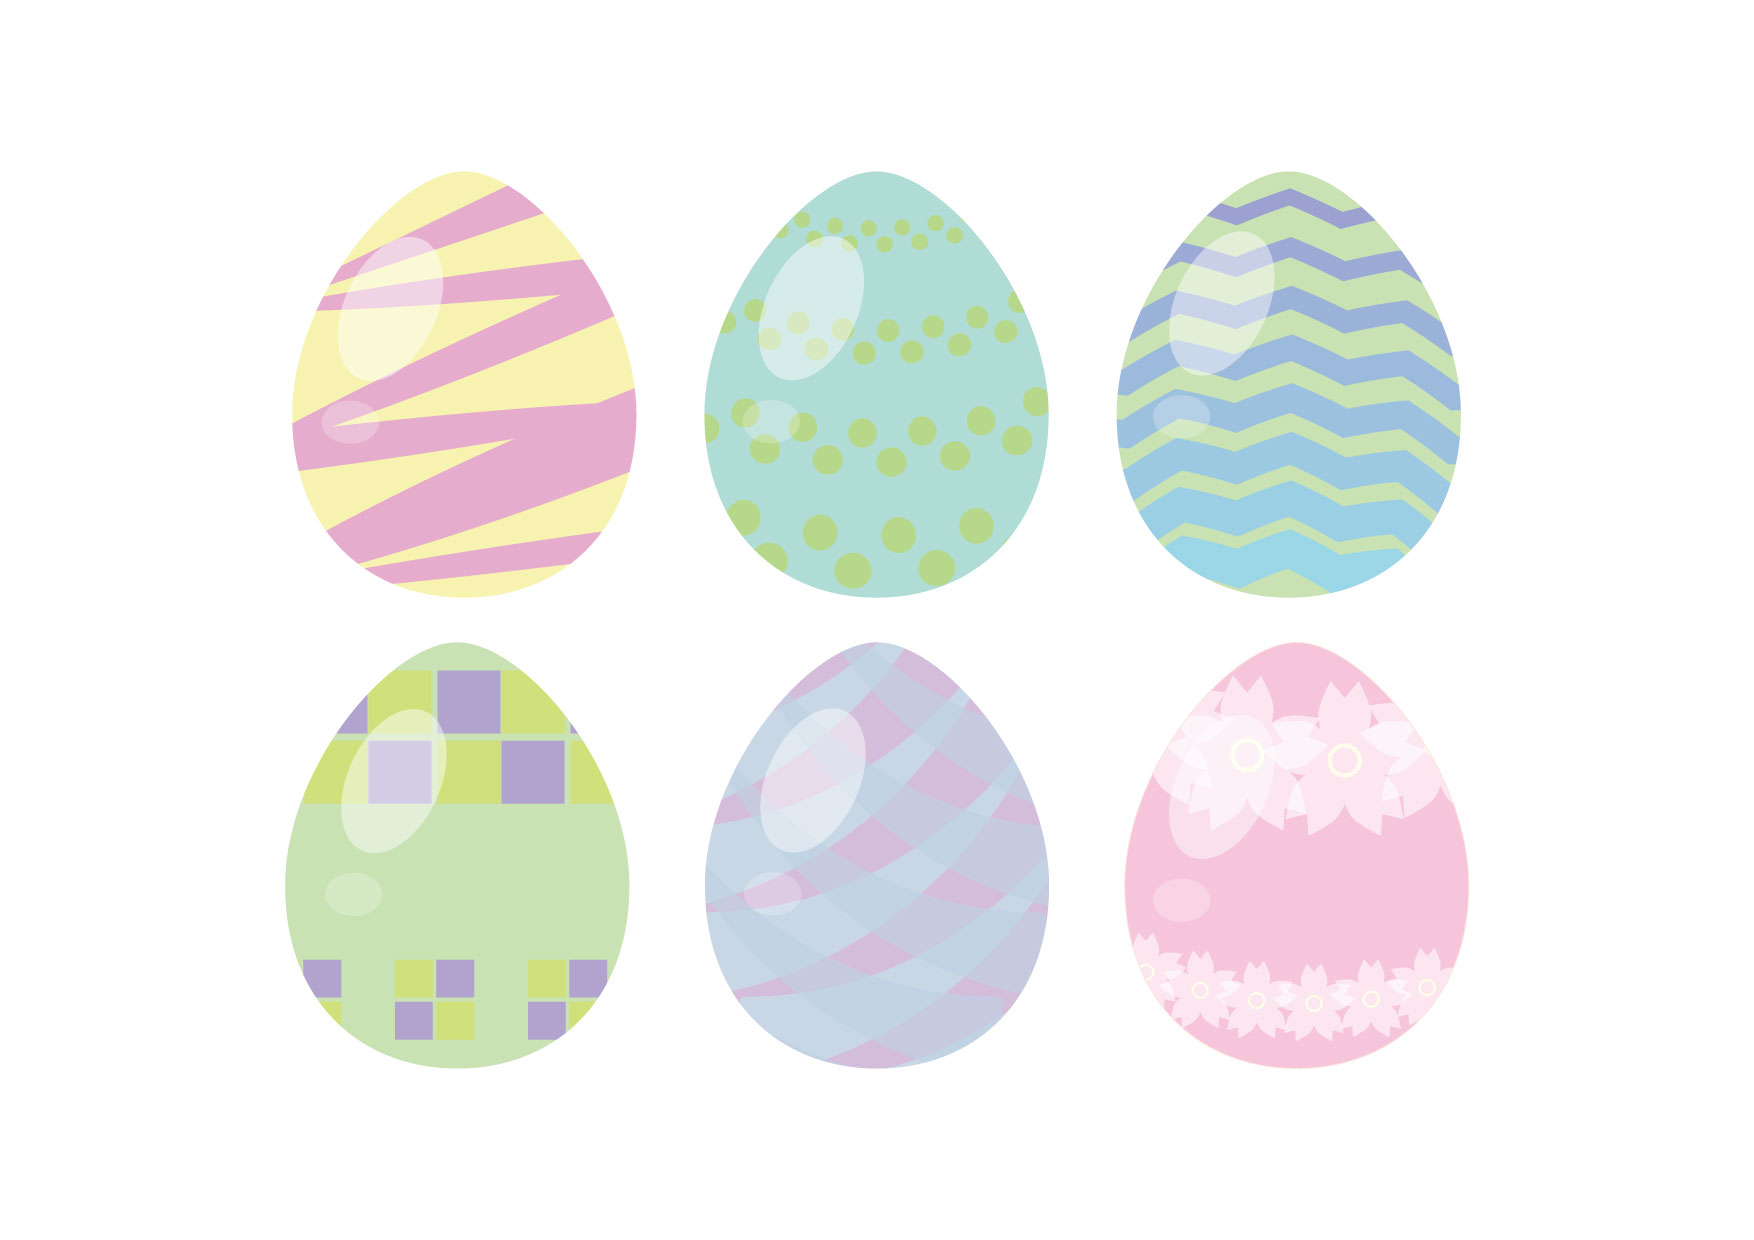 可愛いイラスト無料 イースターエッグ 6つ Free Illustration 6 Easter Eggs 公式 イラスト素材サイト イラスト ダウンロード